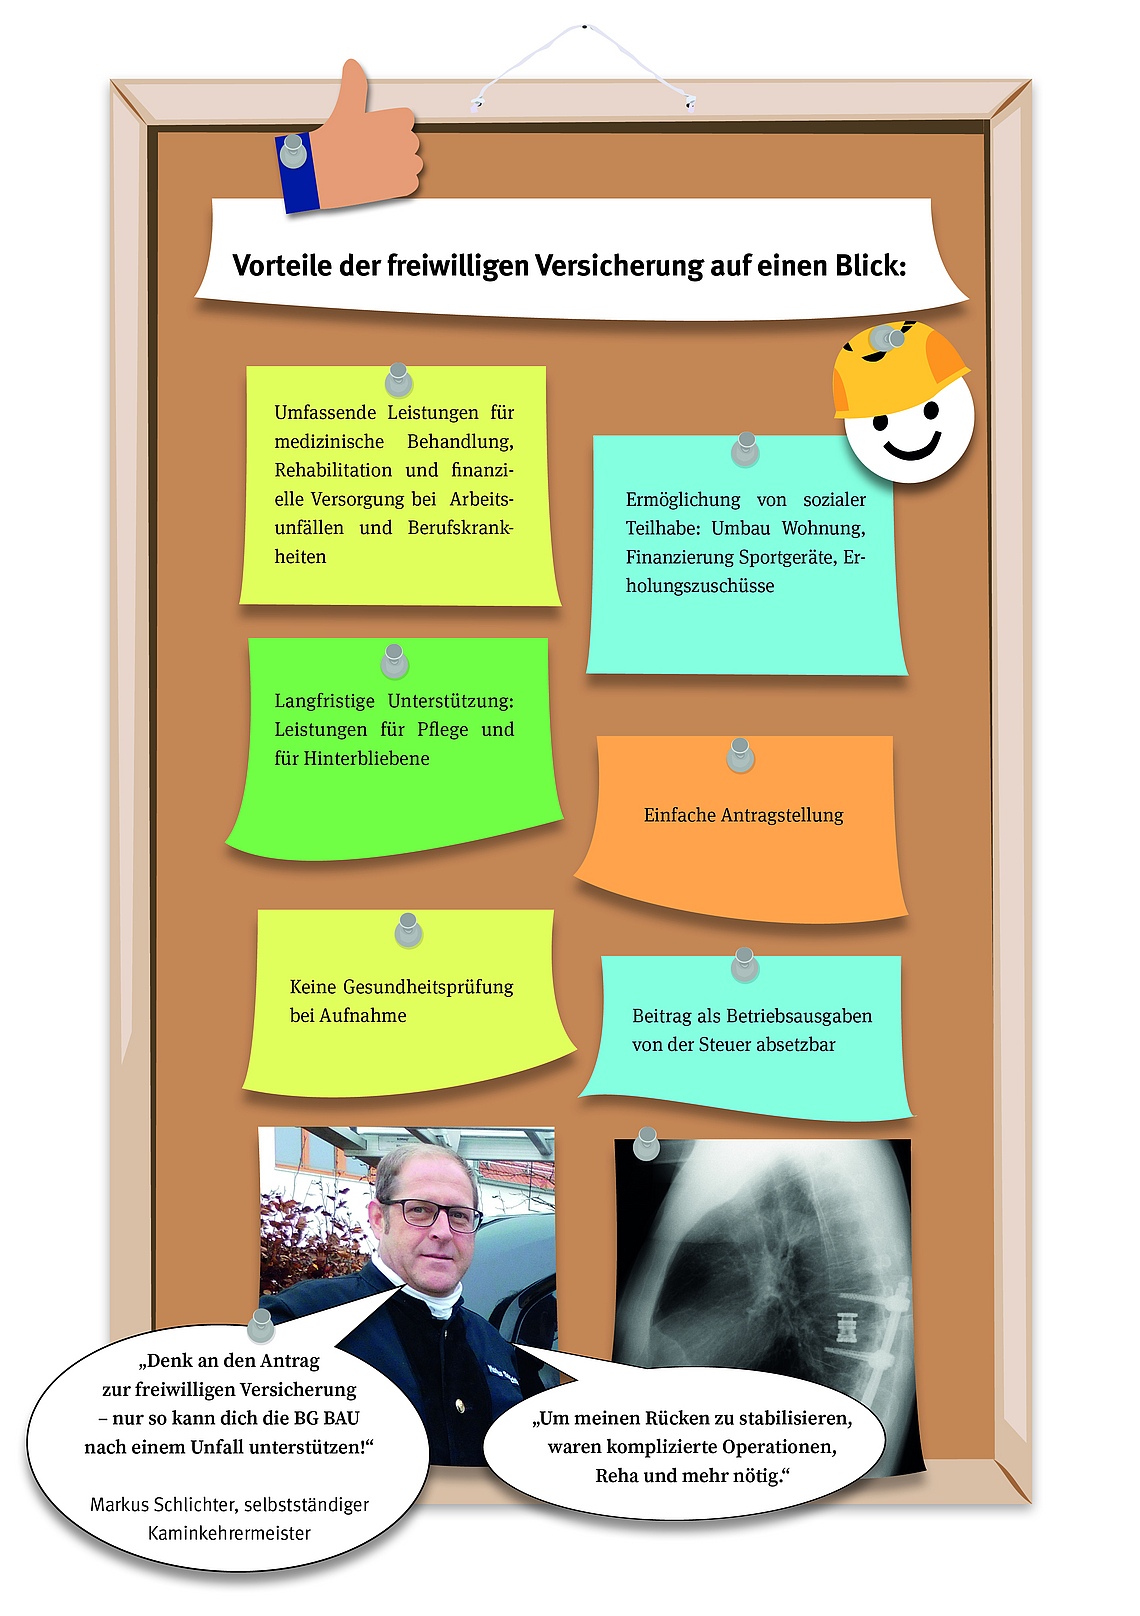 Grafische Darstellung einer Pinnwand mit Post-Its mit Notizen zu Vorteilen der freiwilligen Versicherung bei der BG BAU 
